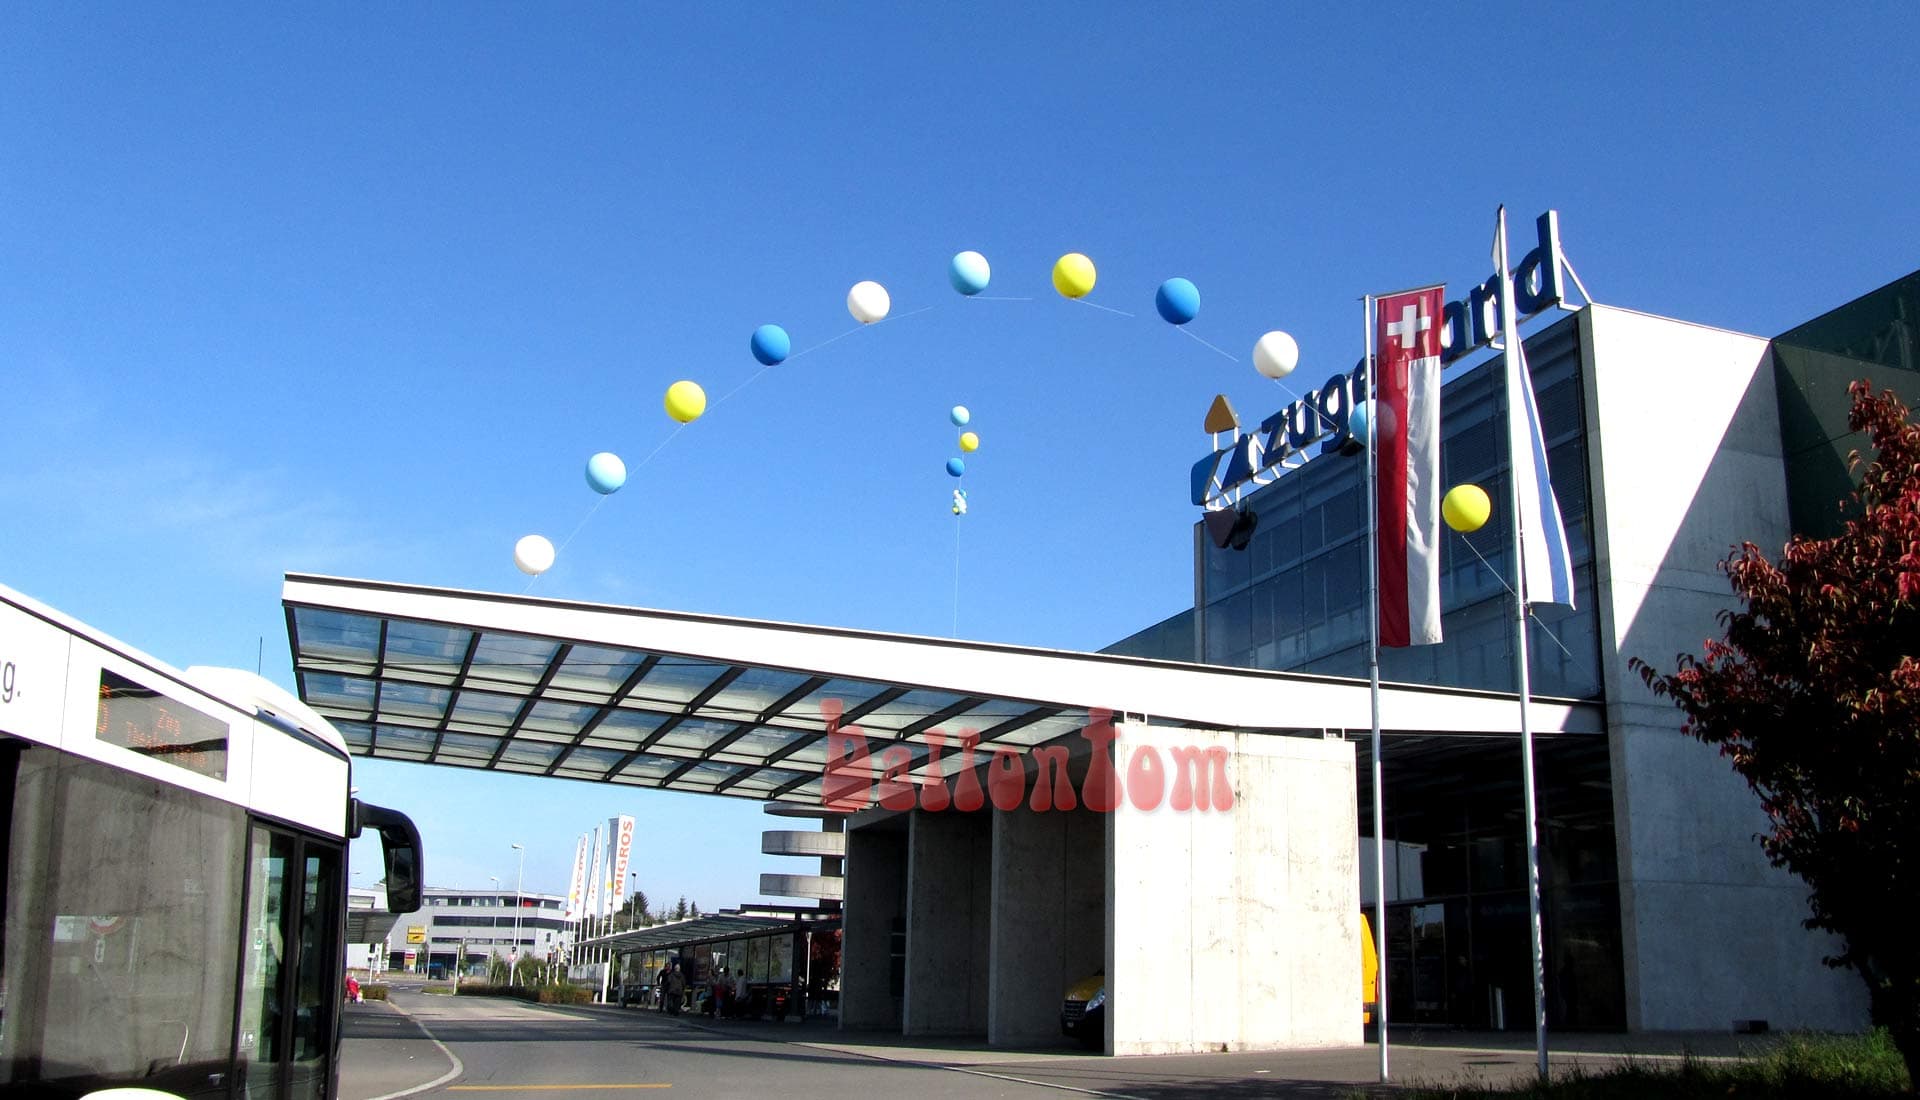 Jubiläum Zuger Land - Projekt: Ballonbox - Foto: Walter Businger - Unterstützung durch ballontom